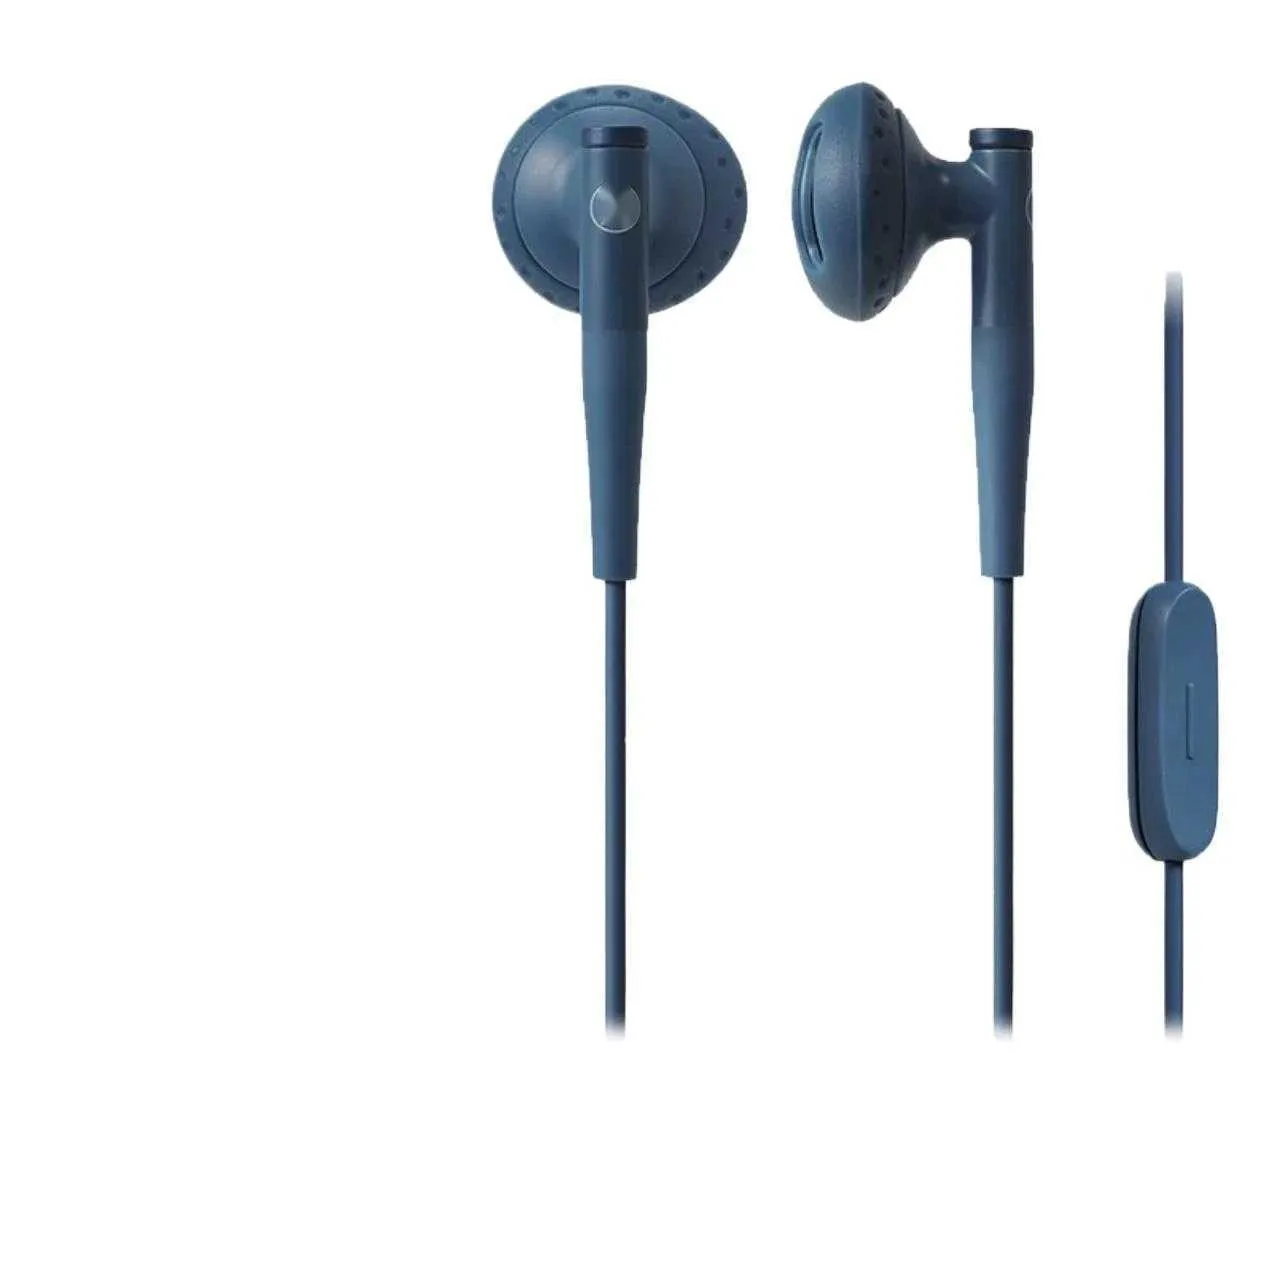 Auricolari audiotecnici semi-in-ear indossabili e comodi per biblioteca, aula, sport all'aria aperta 4SKVN